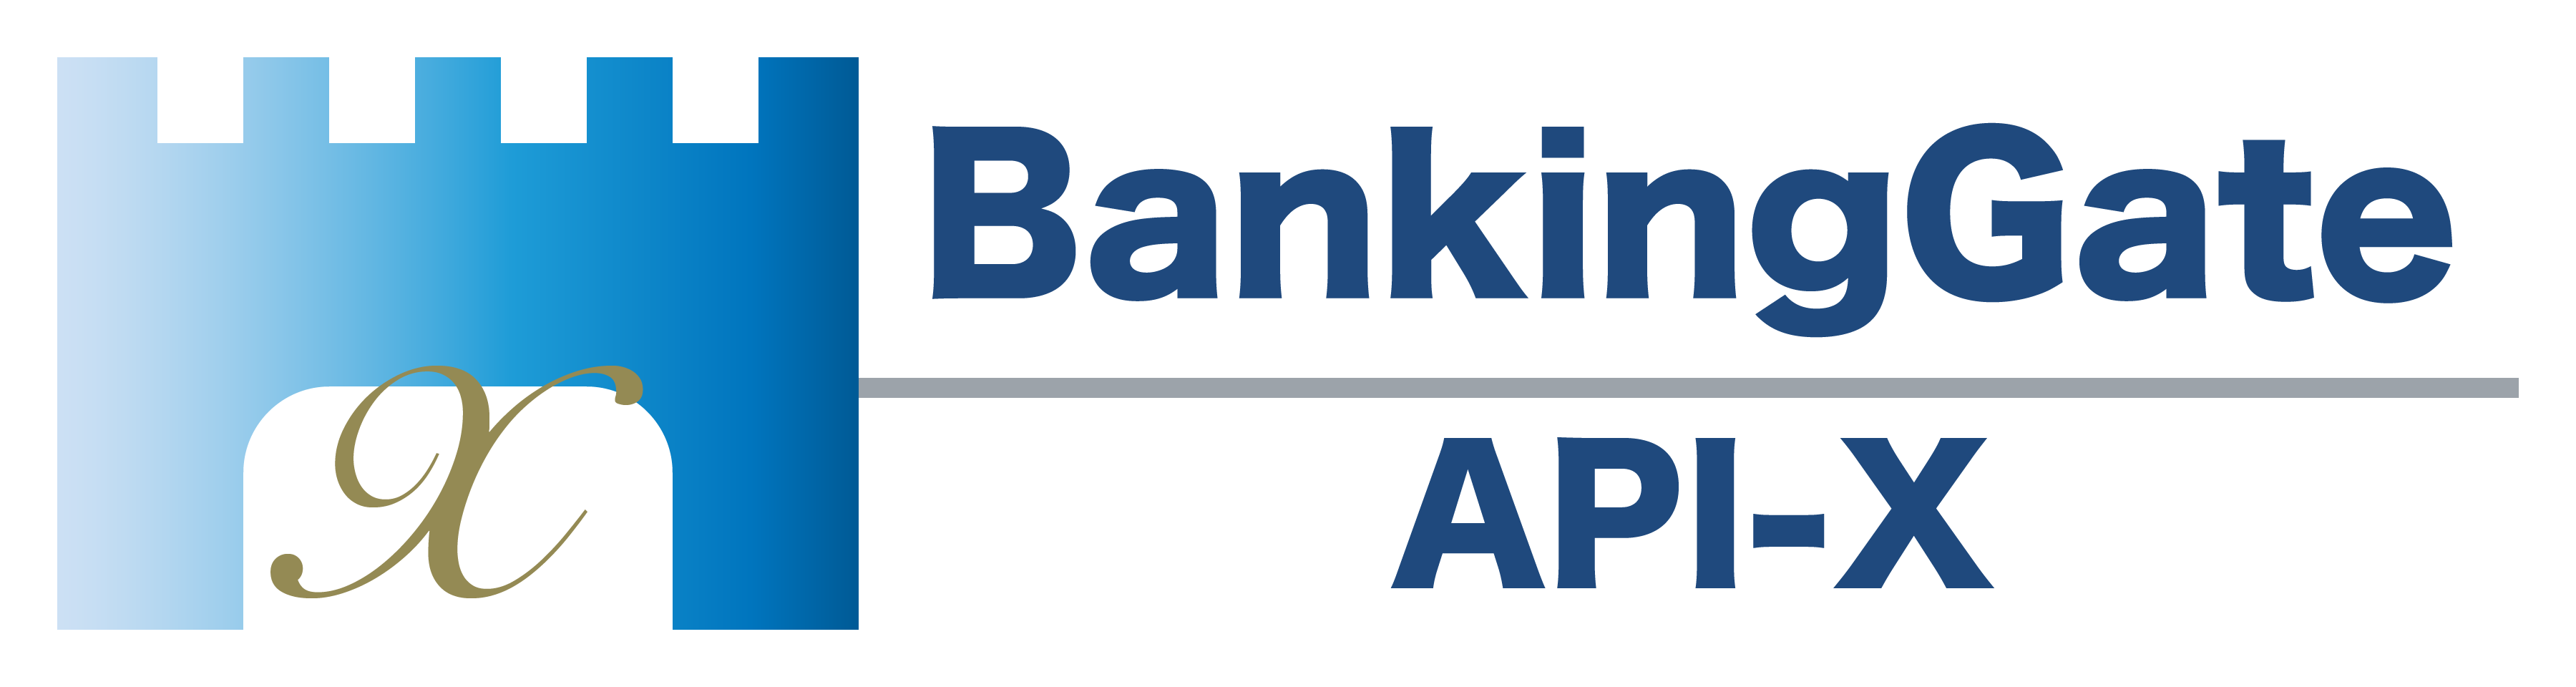 銀行API接続システム「BankingGate API-X」